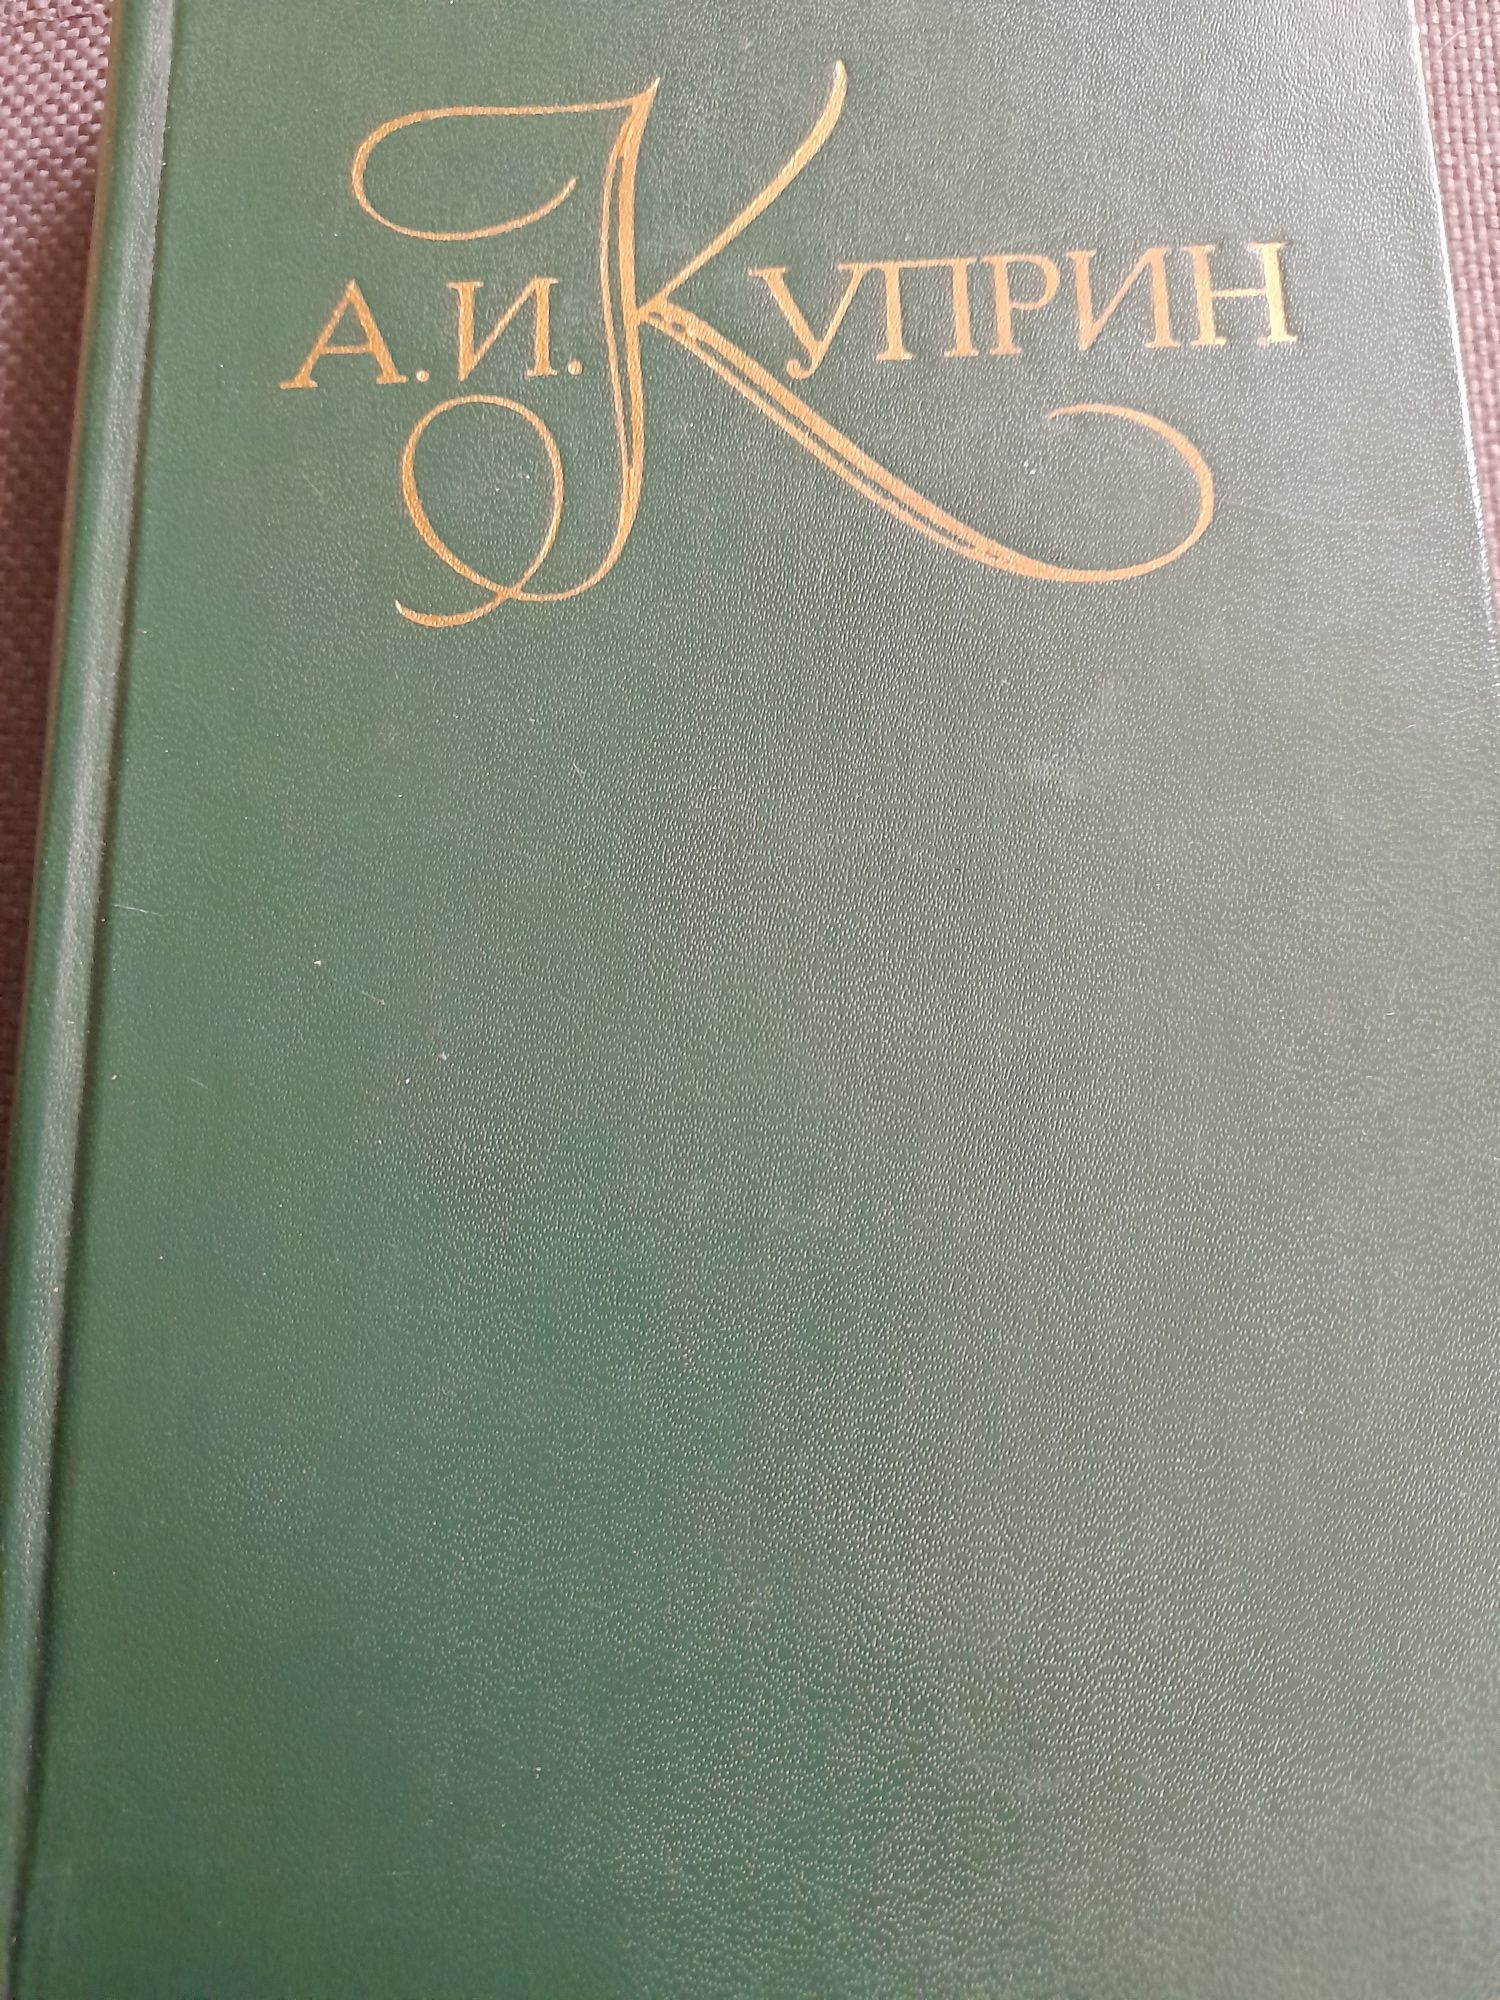 А.И.Куприн  "Повести рассказы" 2 тома